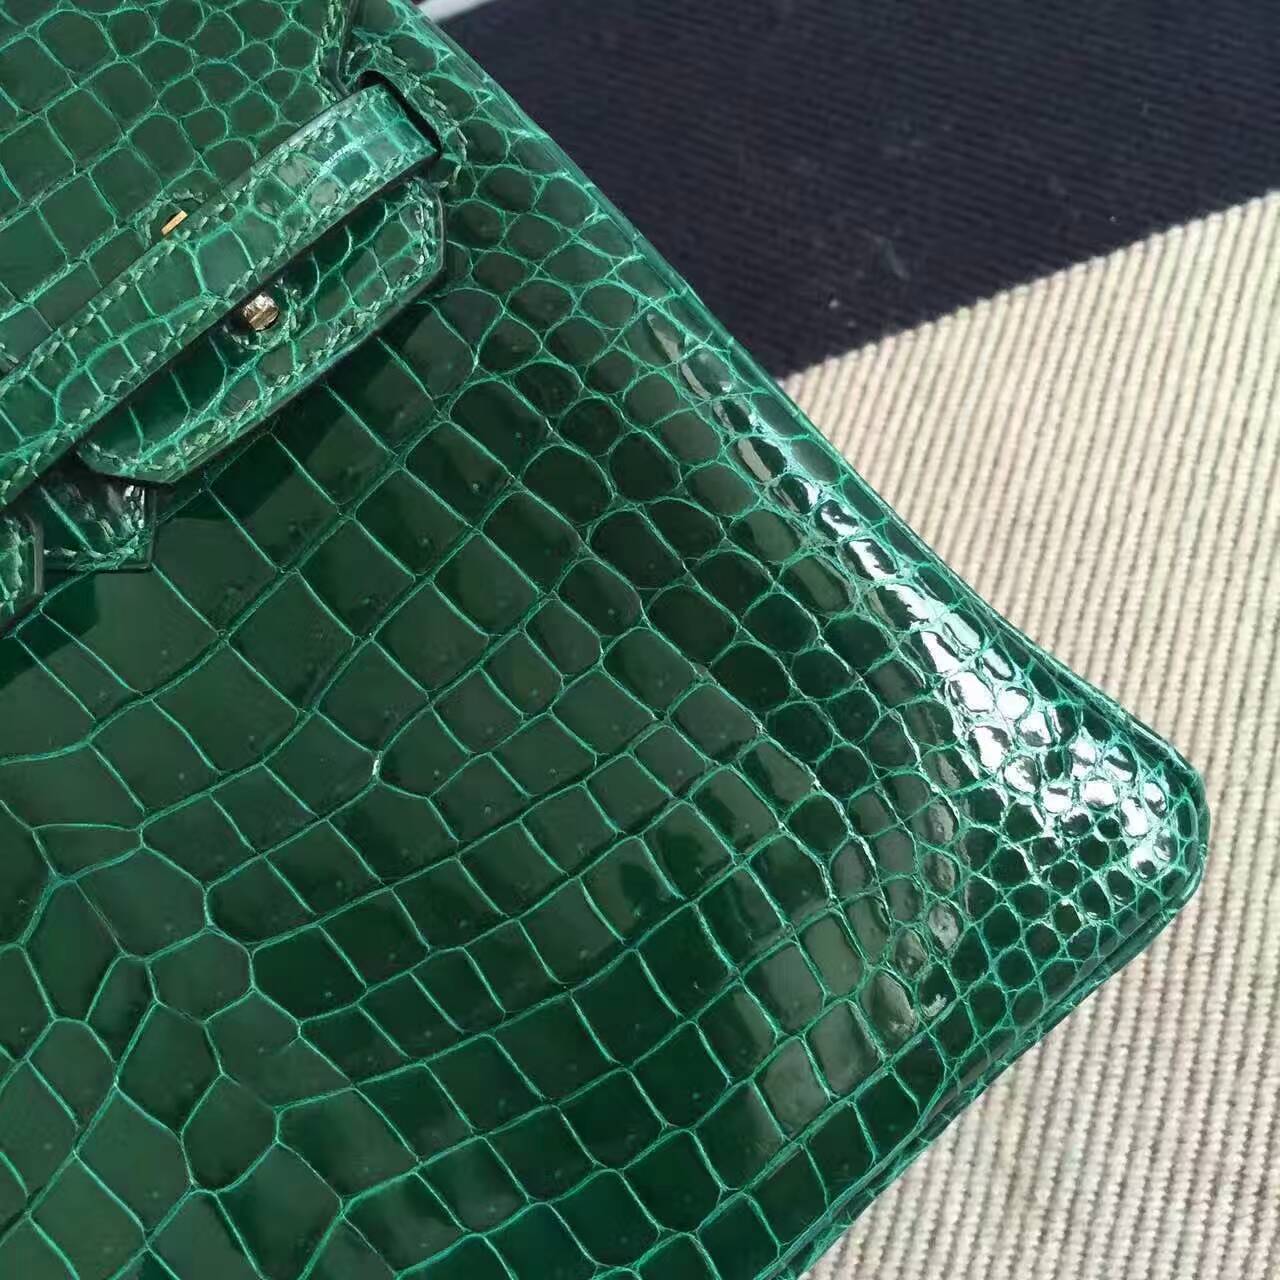 Luxury Hermes CK67 Vert Fonce Crocodile Shiny Leather Birkin Bag 25cm